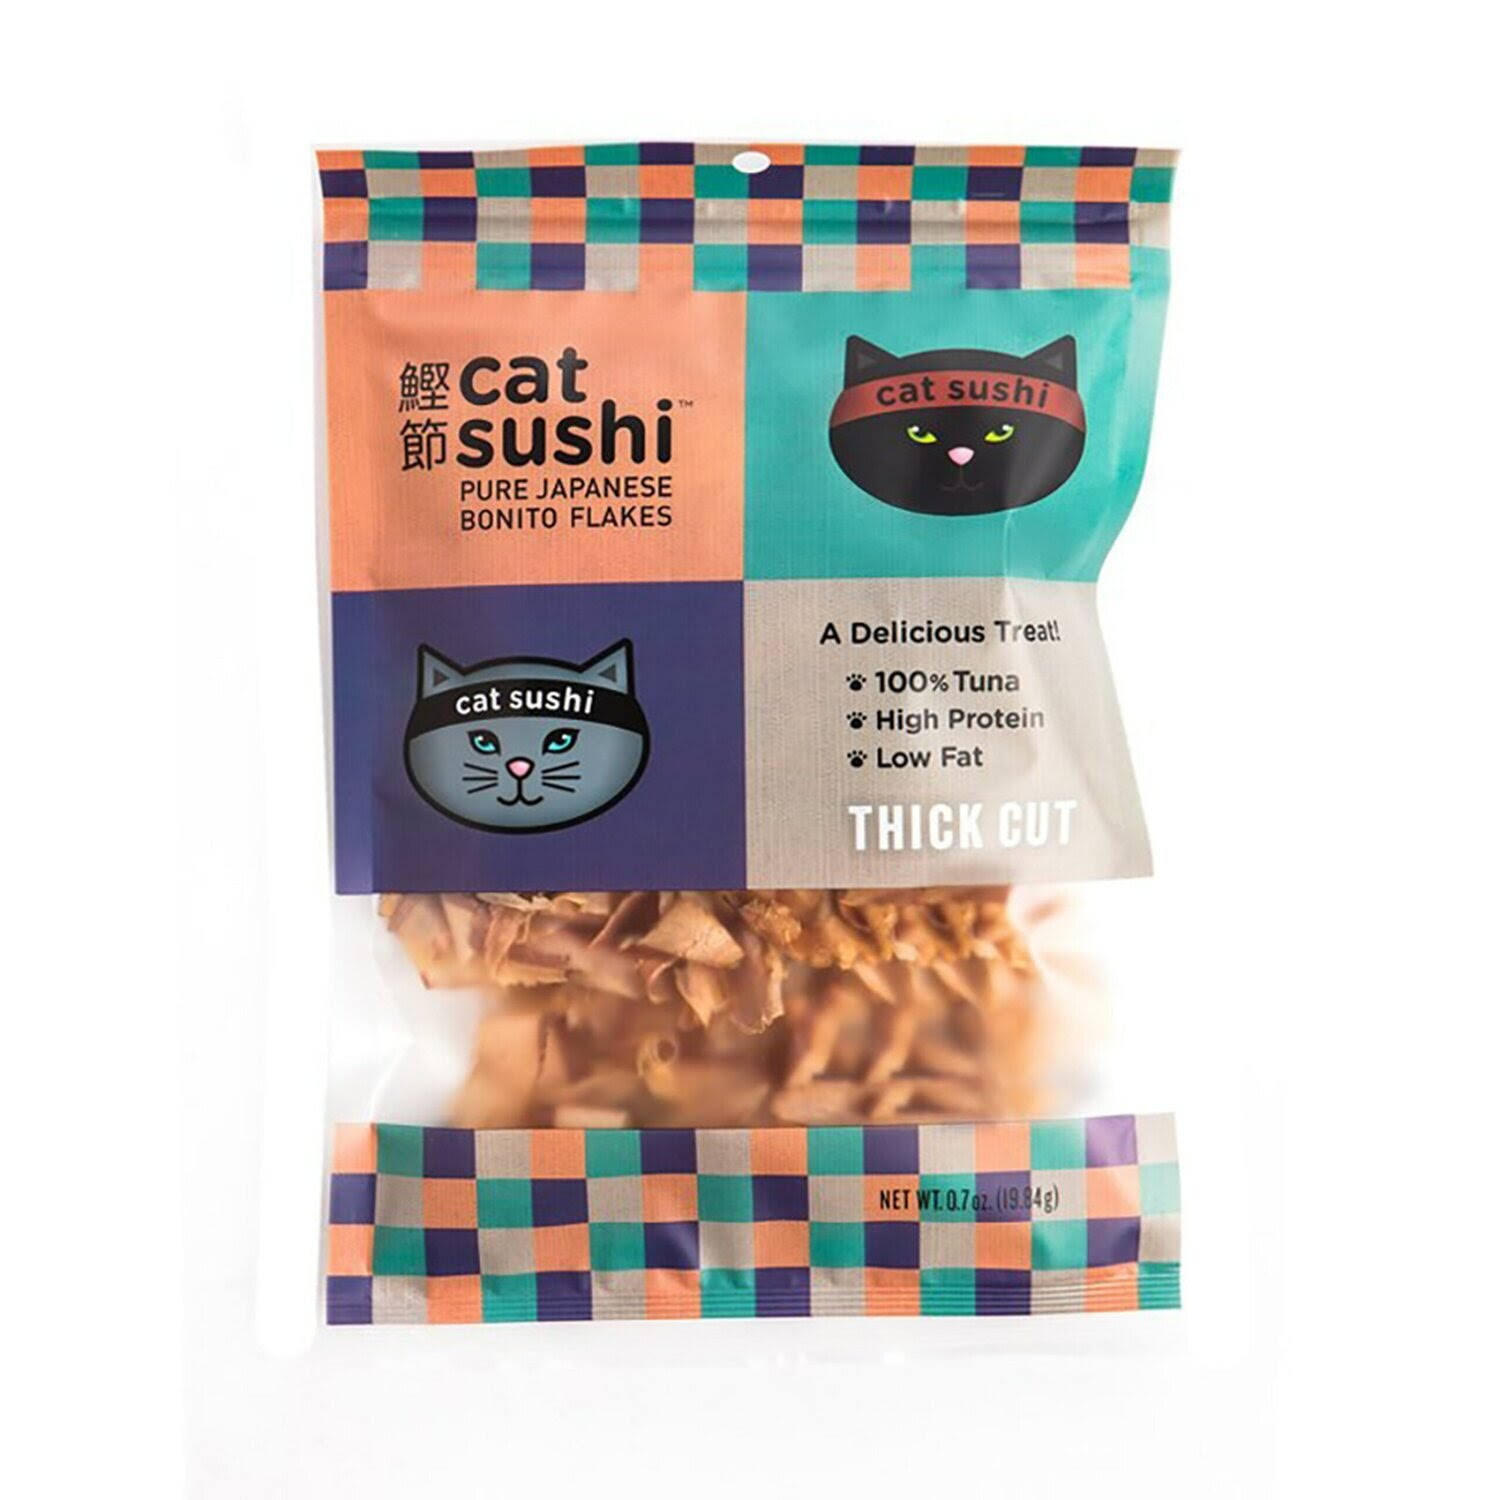 Cat Sushi Thick Cut Bonito Flakes